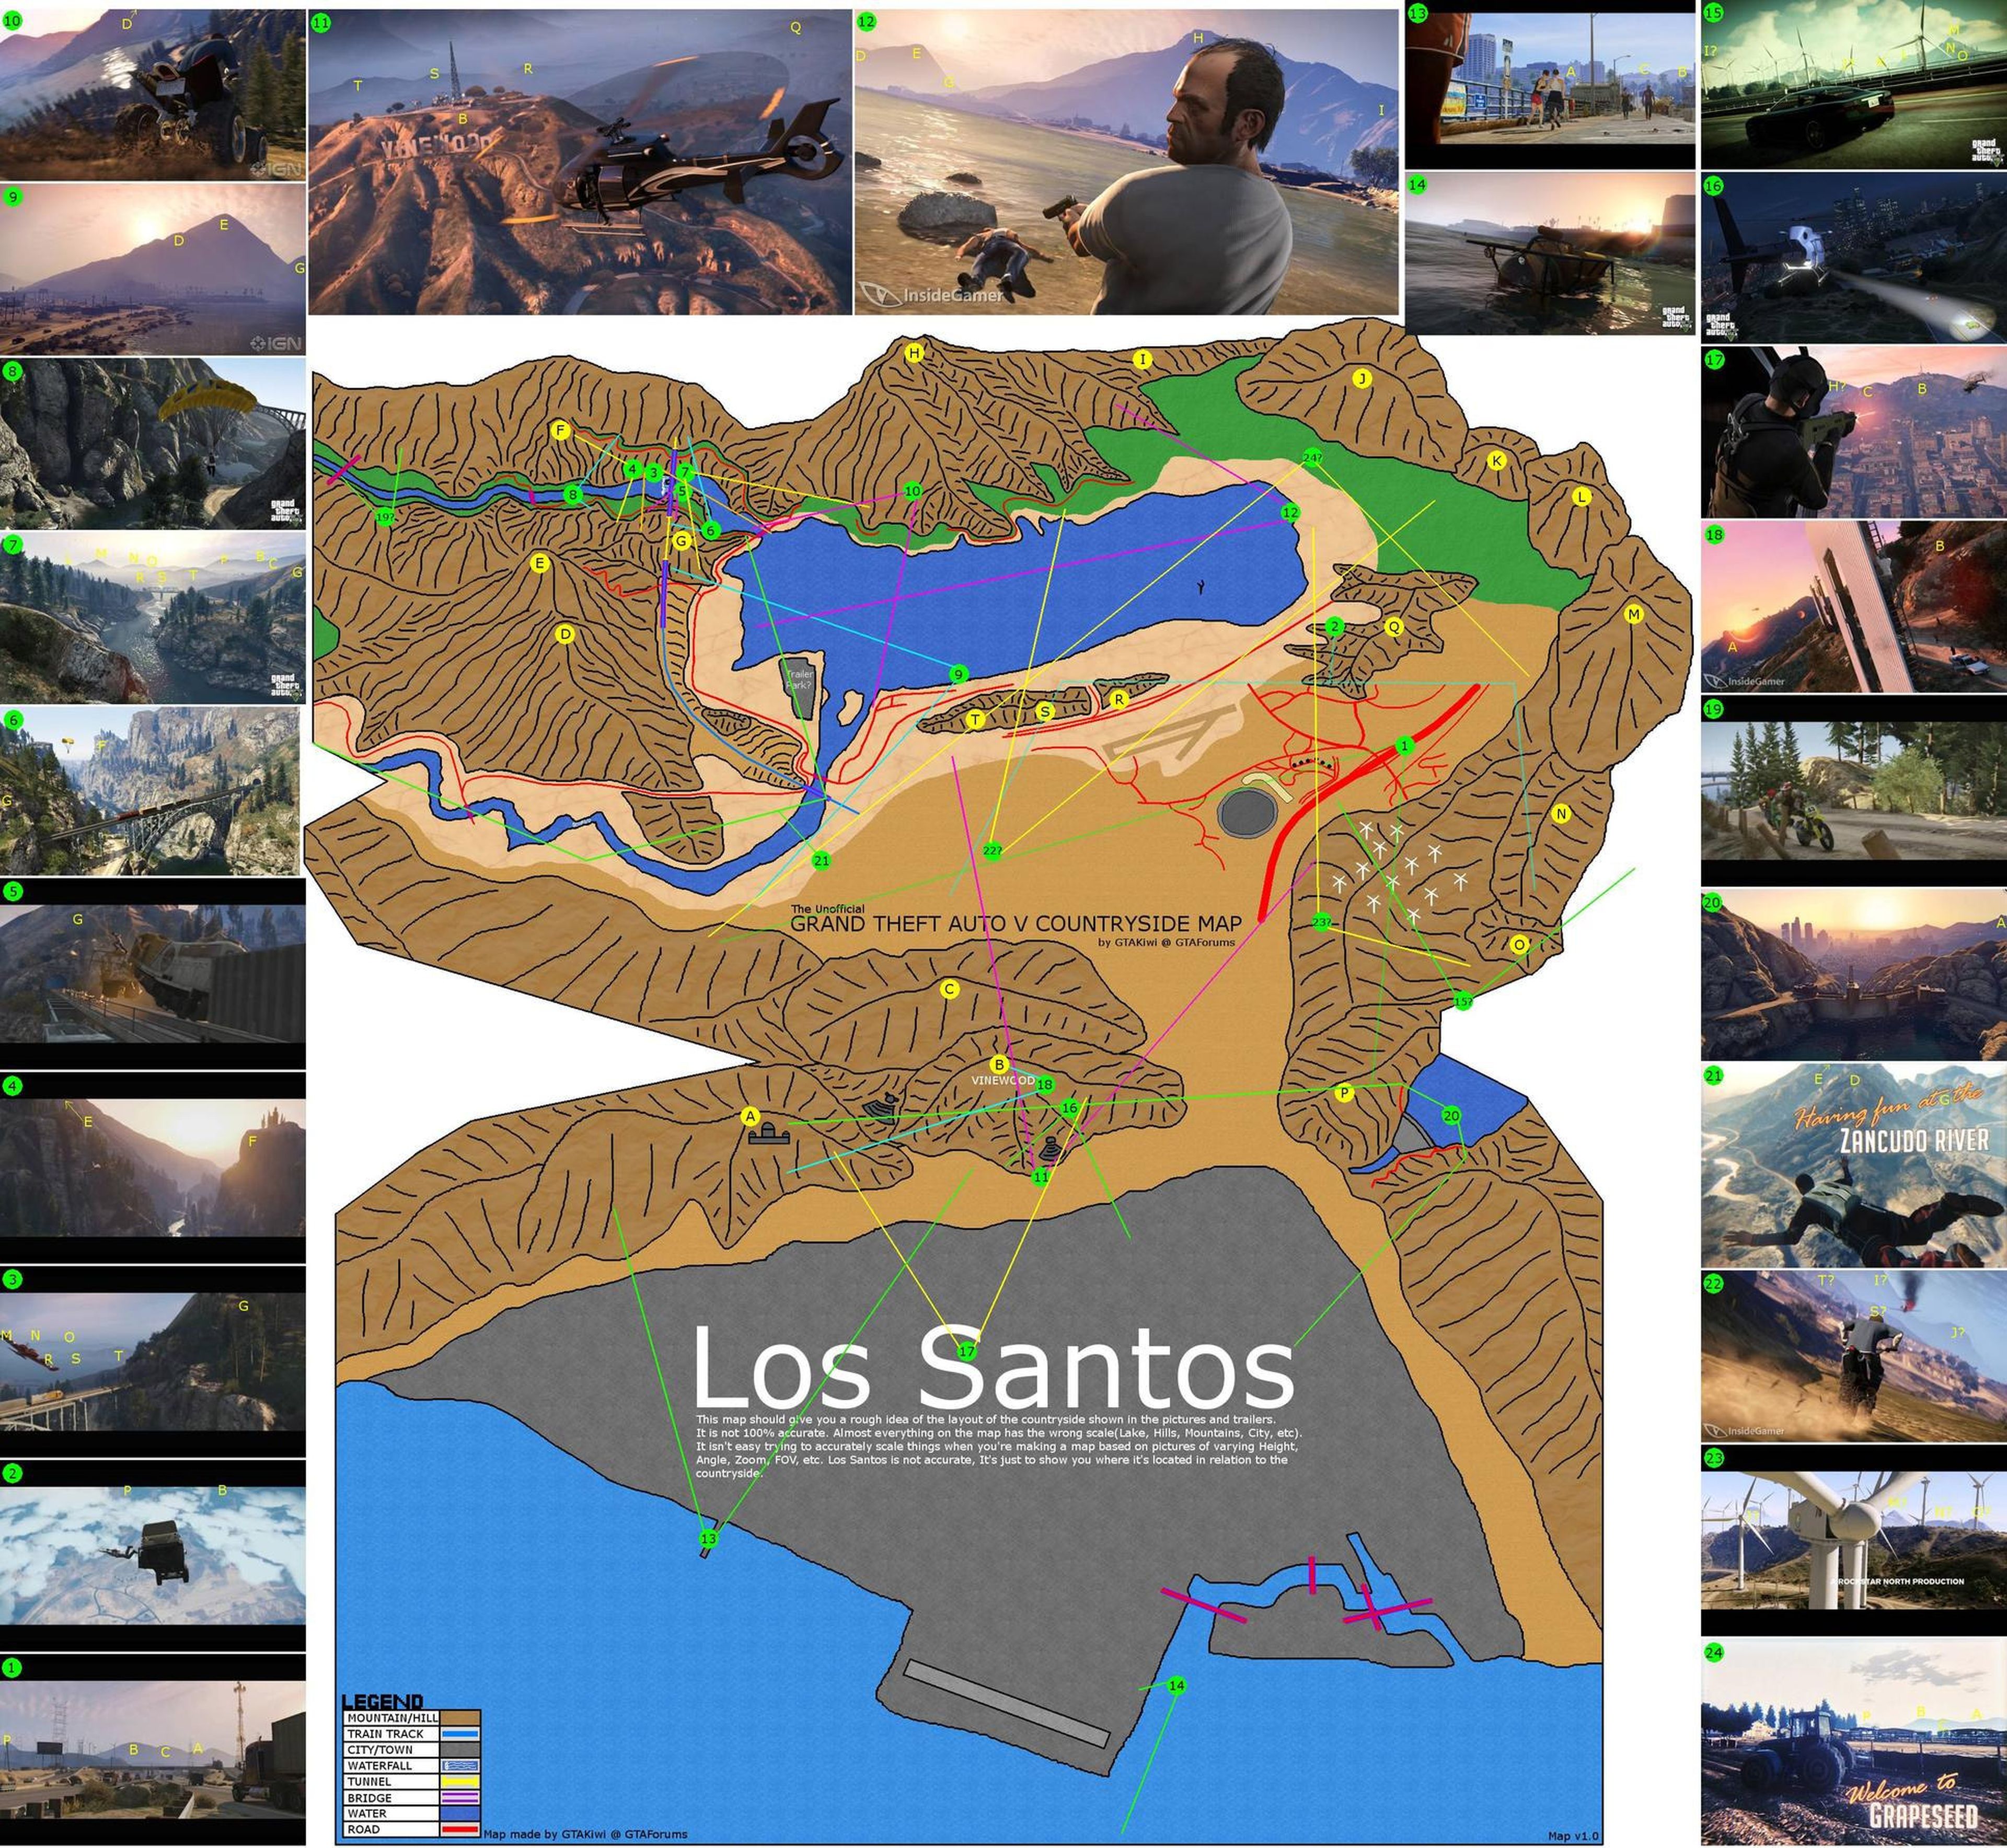 El mapa de GTA 5 según sus imágenes